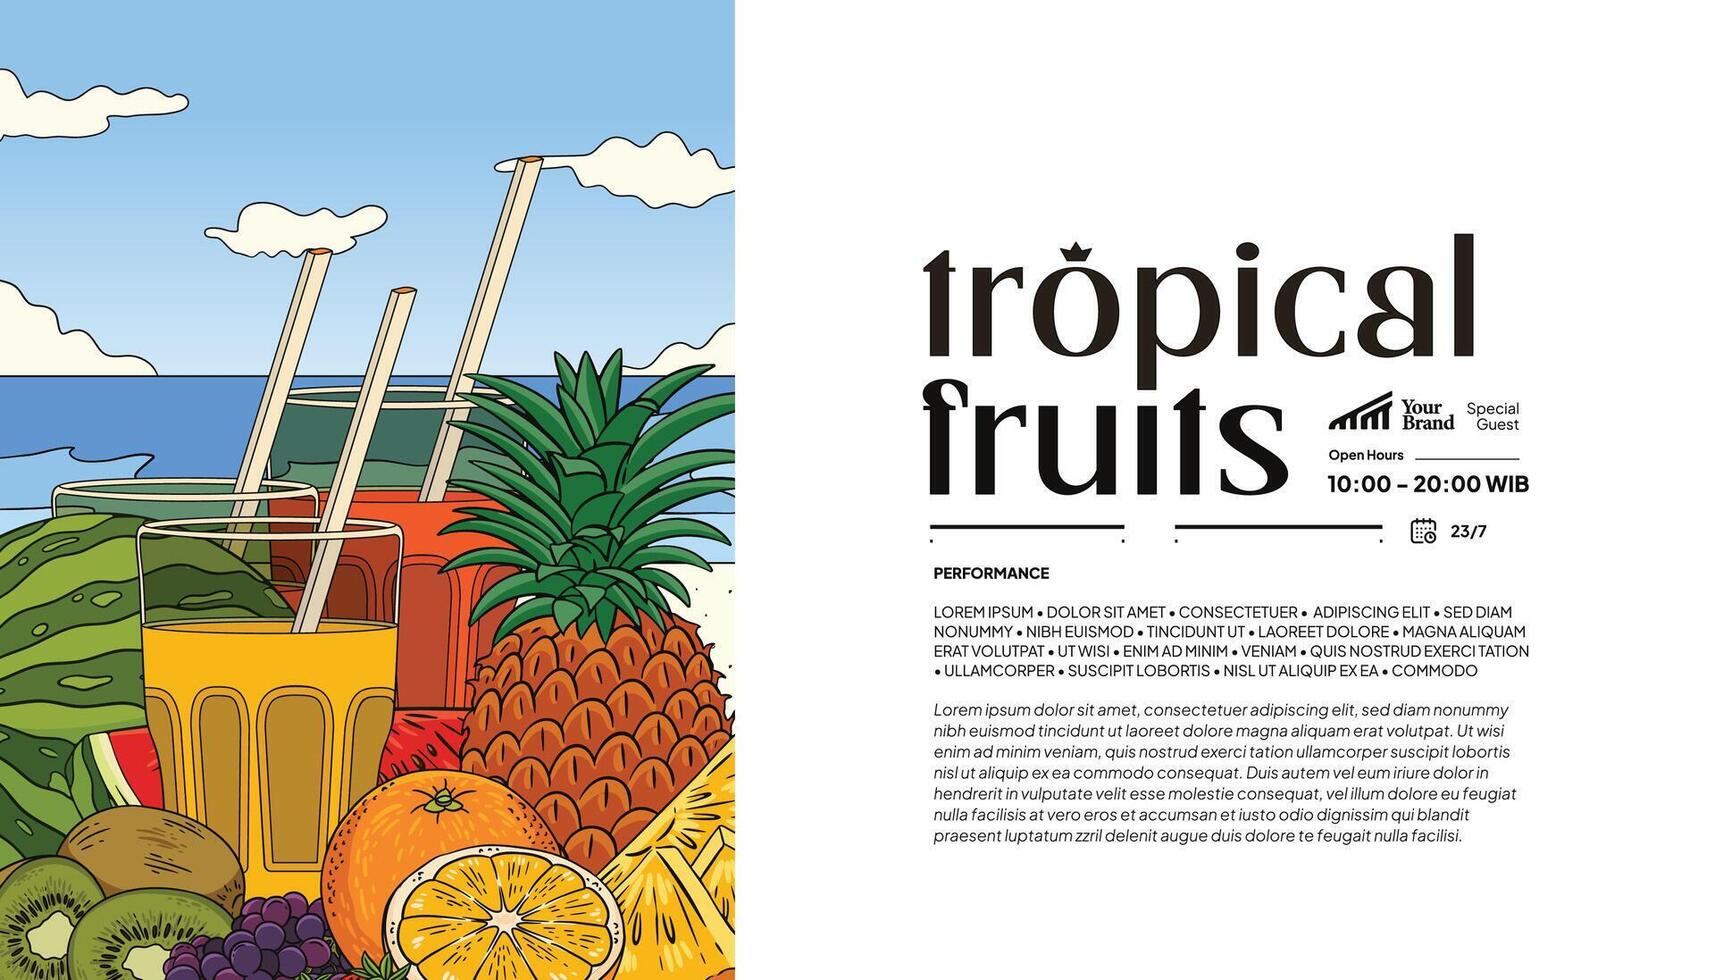 Tourismus oder Gesundheit Veranstaltung Poster Idee mit tropisch Früchte Illustration vektor